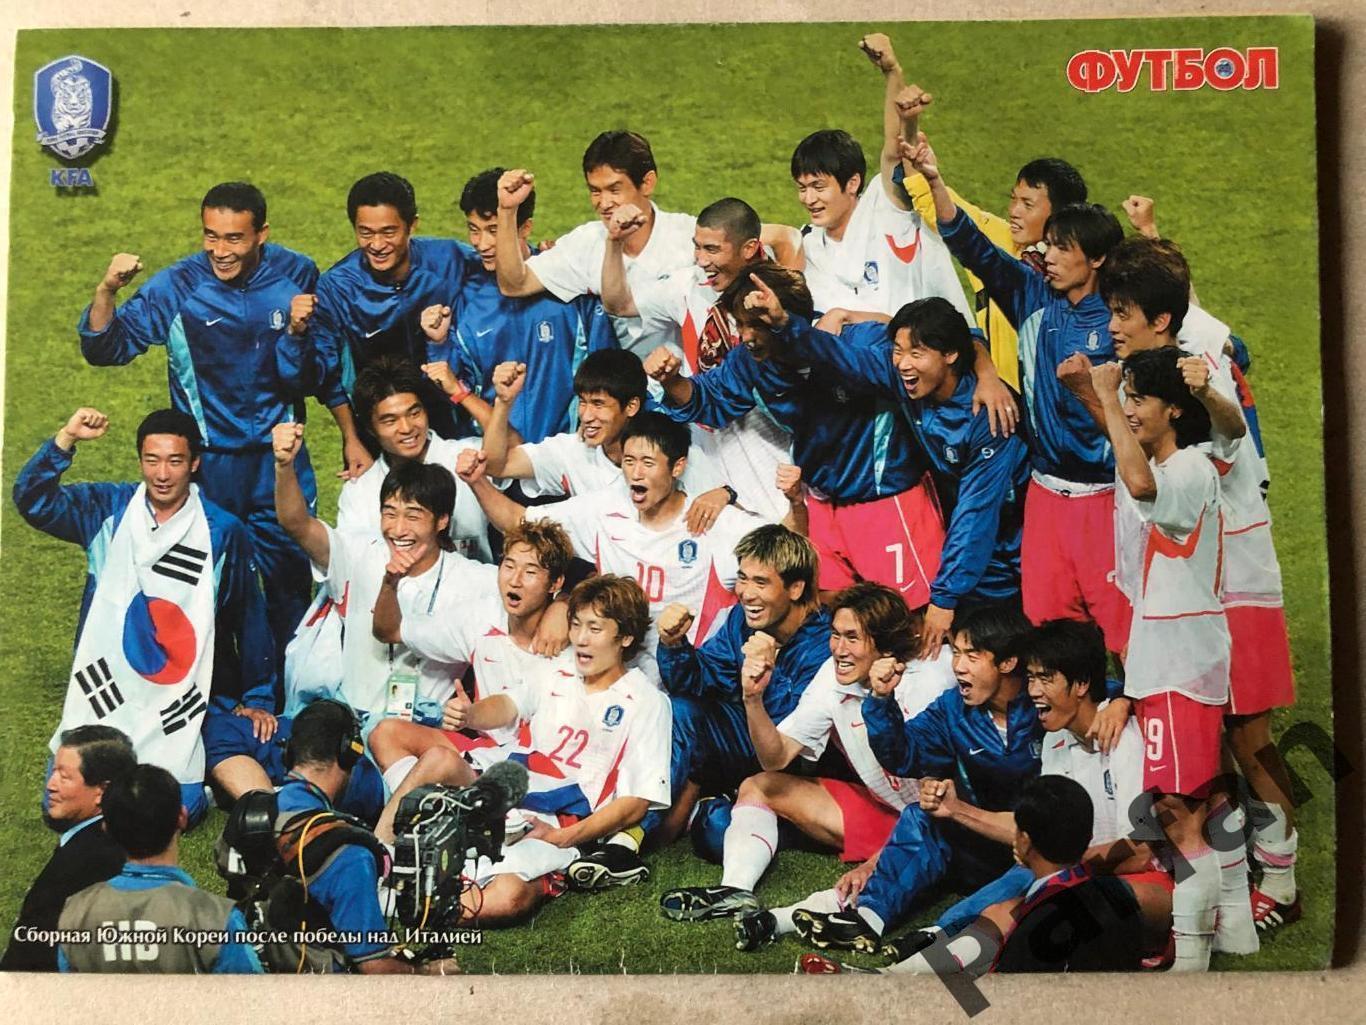 Журнал Футбол 2002 №25 Італія/Корея 2